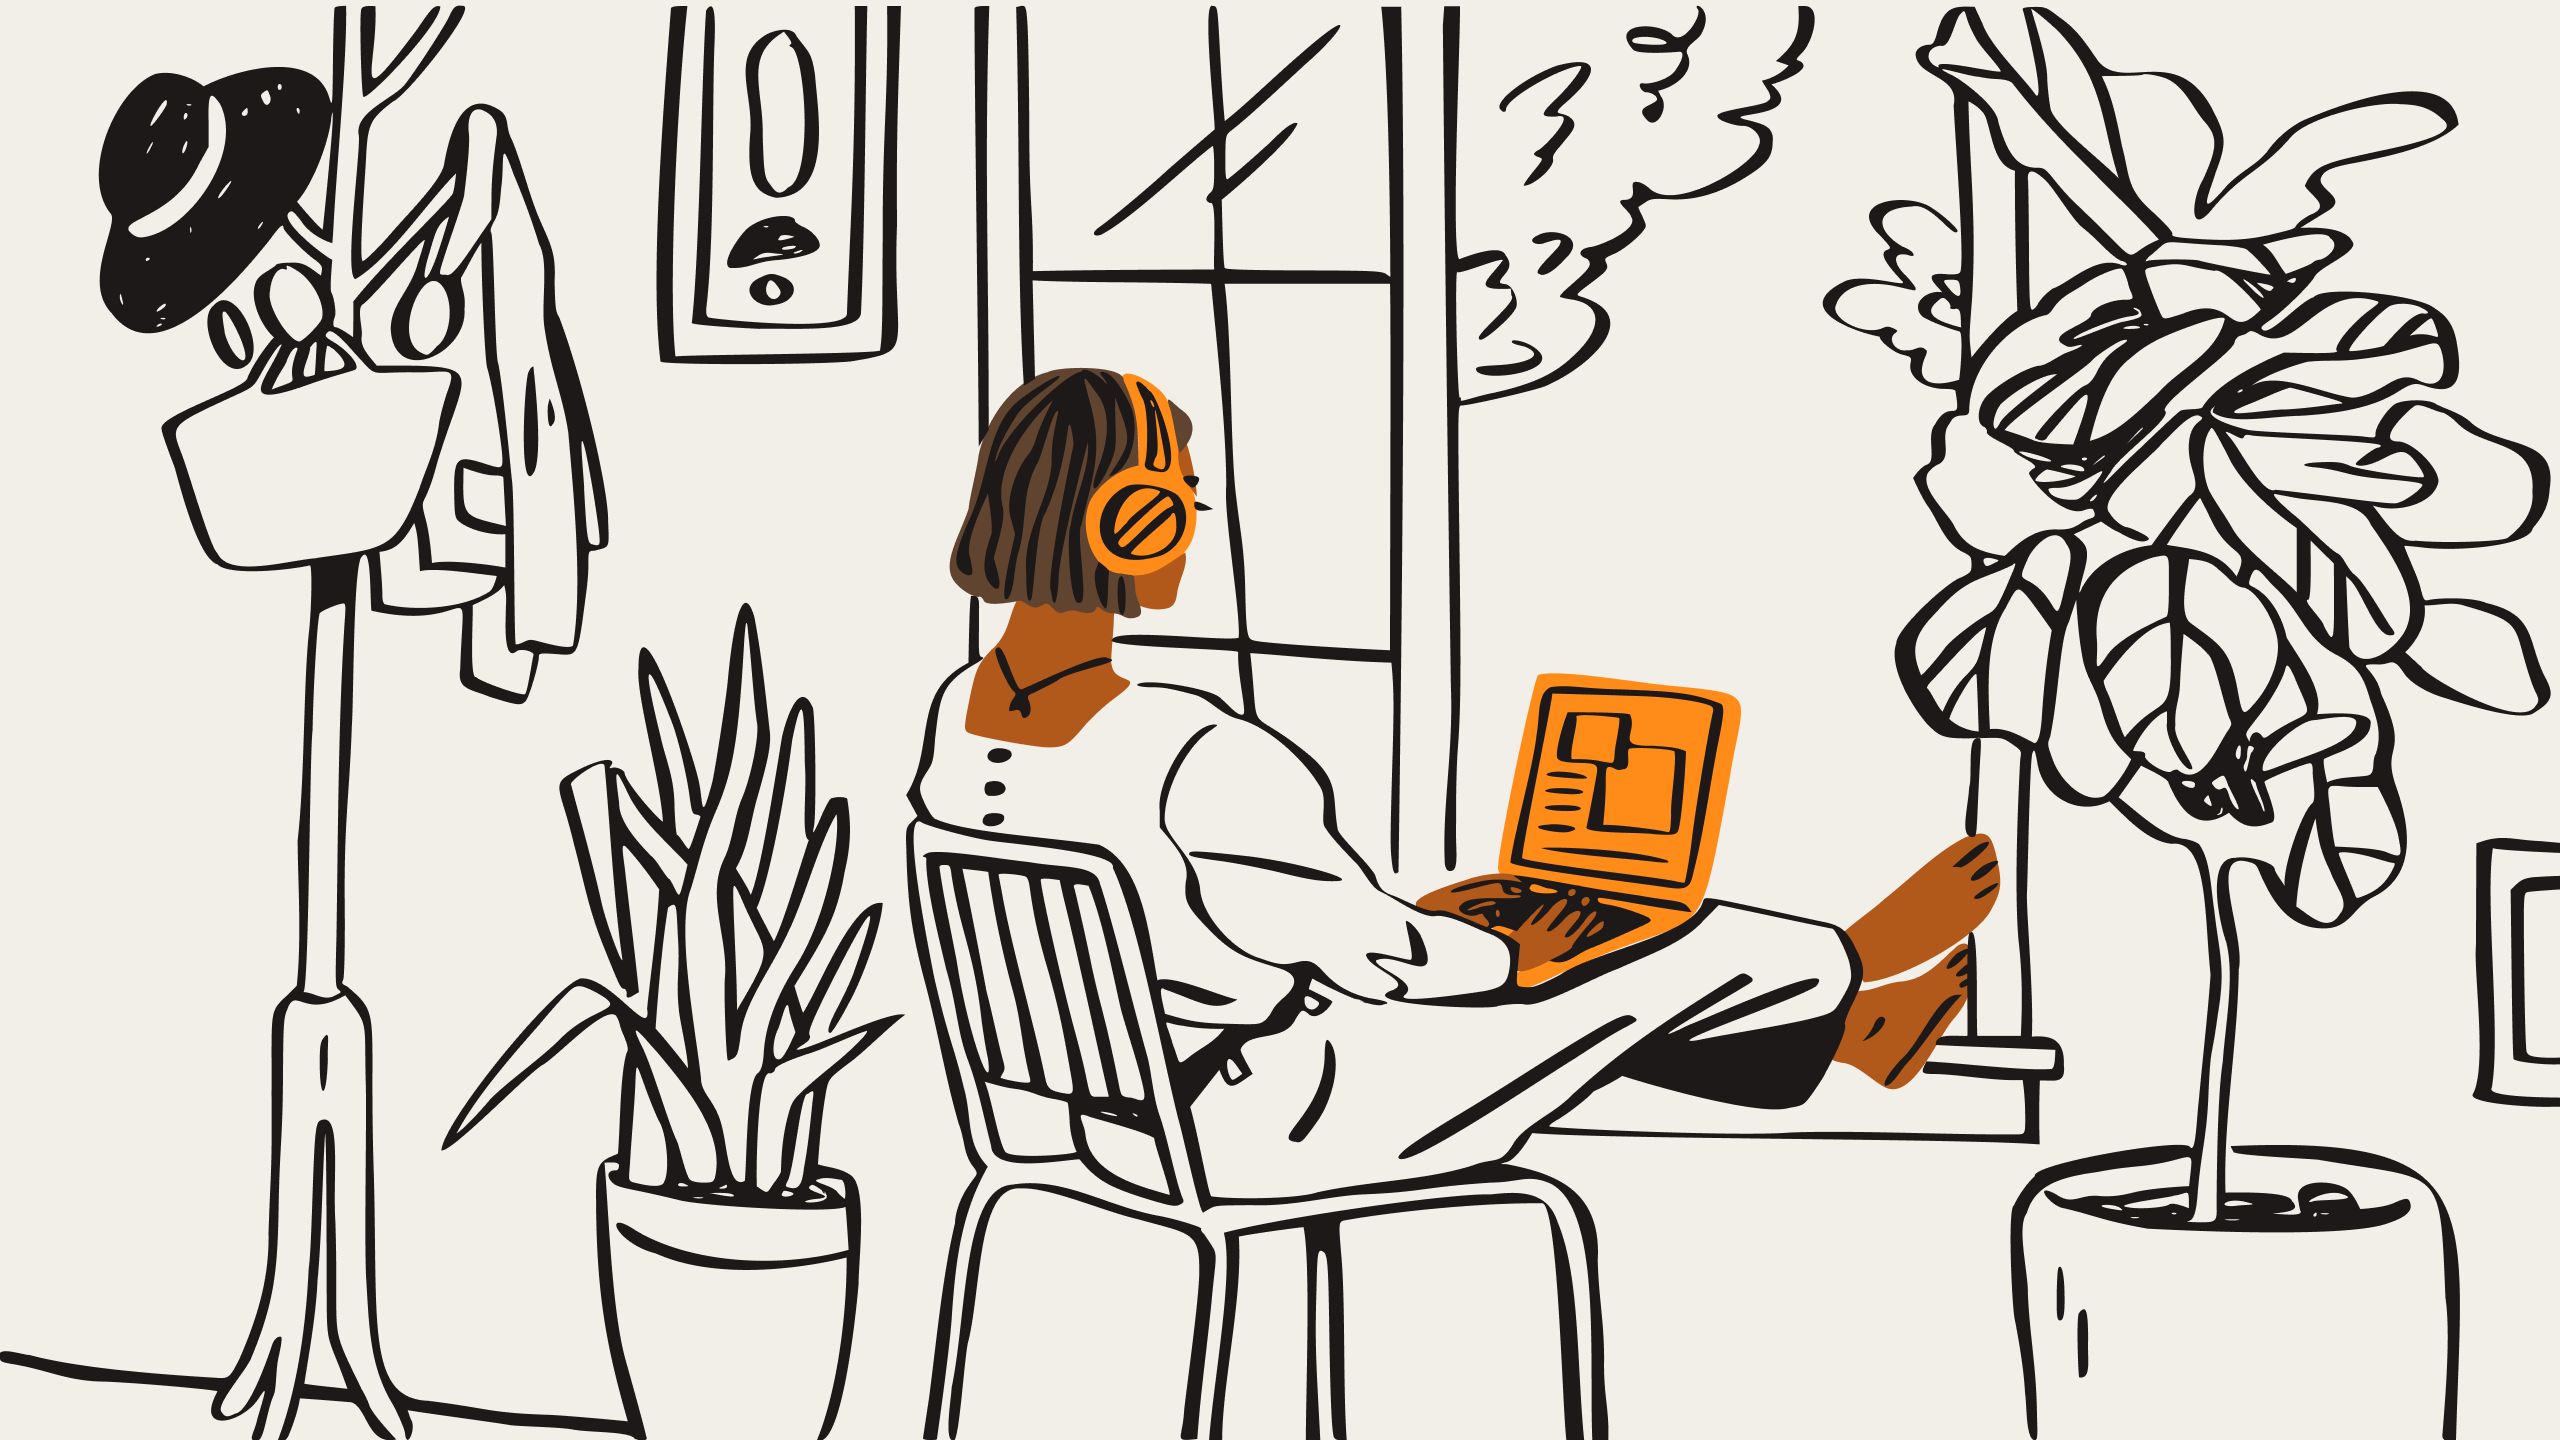 Een illustratie van een persoon met een oranje koptelefoon op die op een stoel zit en naar een oranje laptop kijkt